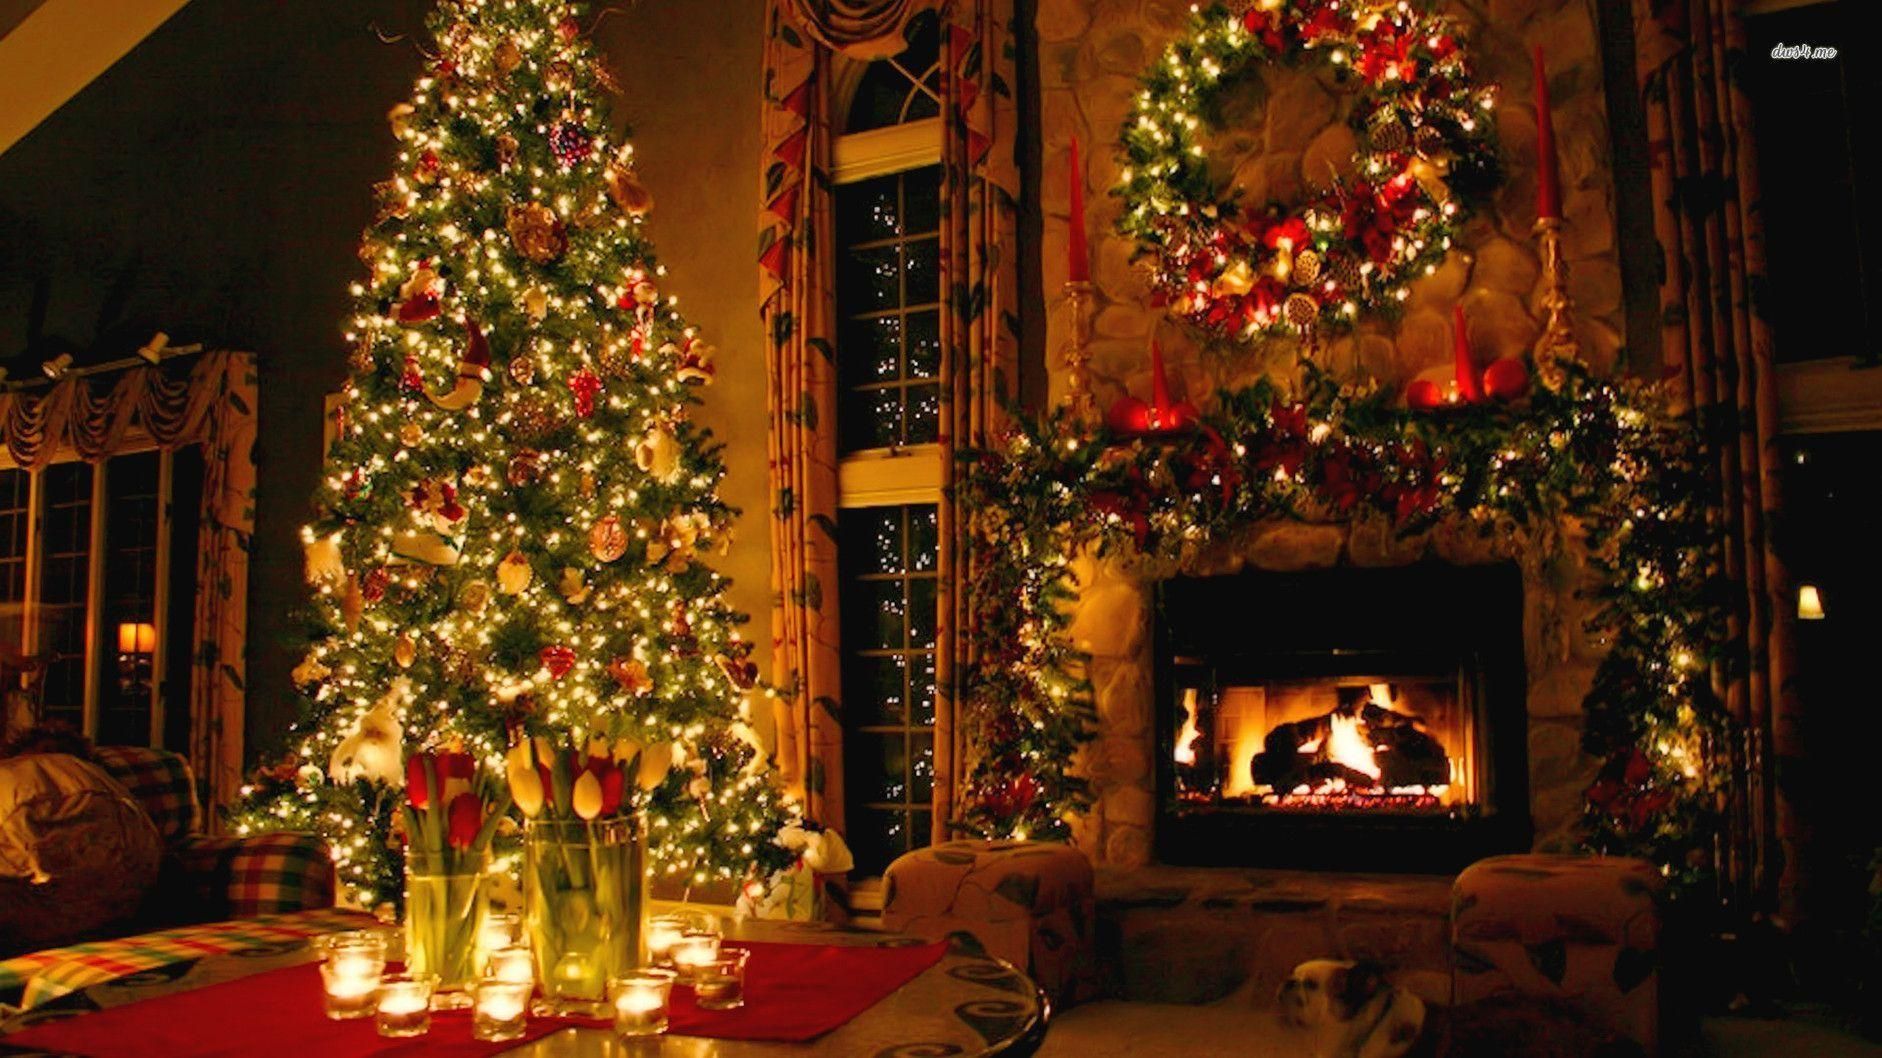 Fireplace Christmas Decor Wallpaper in HD. HD Wallpaper. Decoracion de arboles, Como adornar para navidad, Arbol de navidad